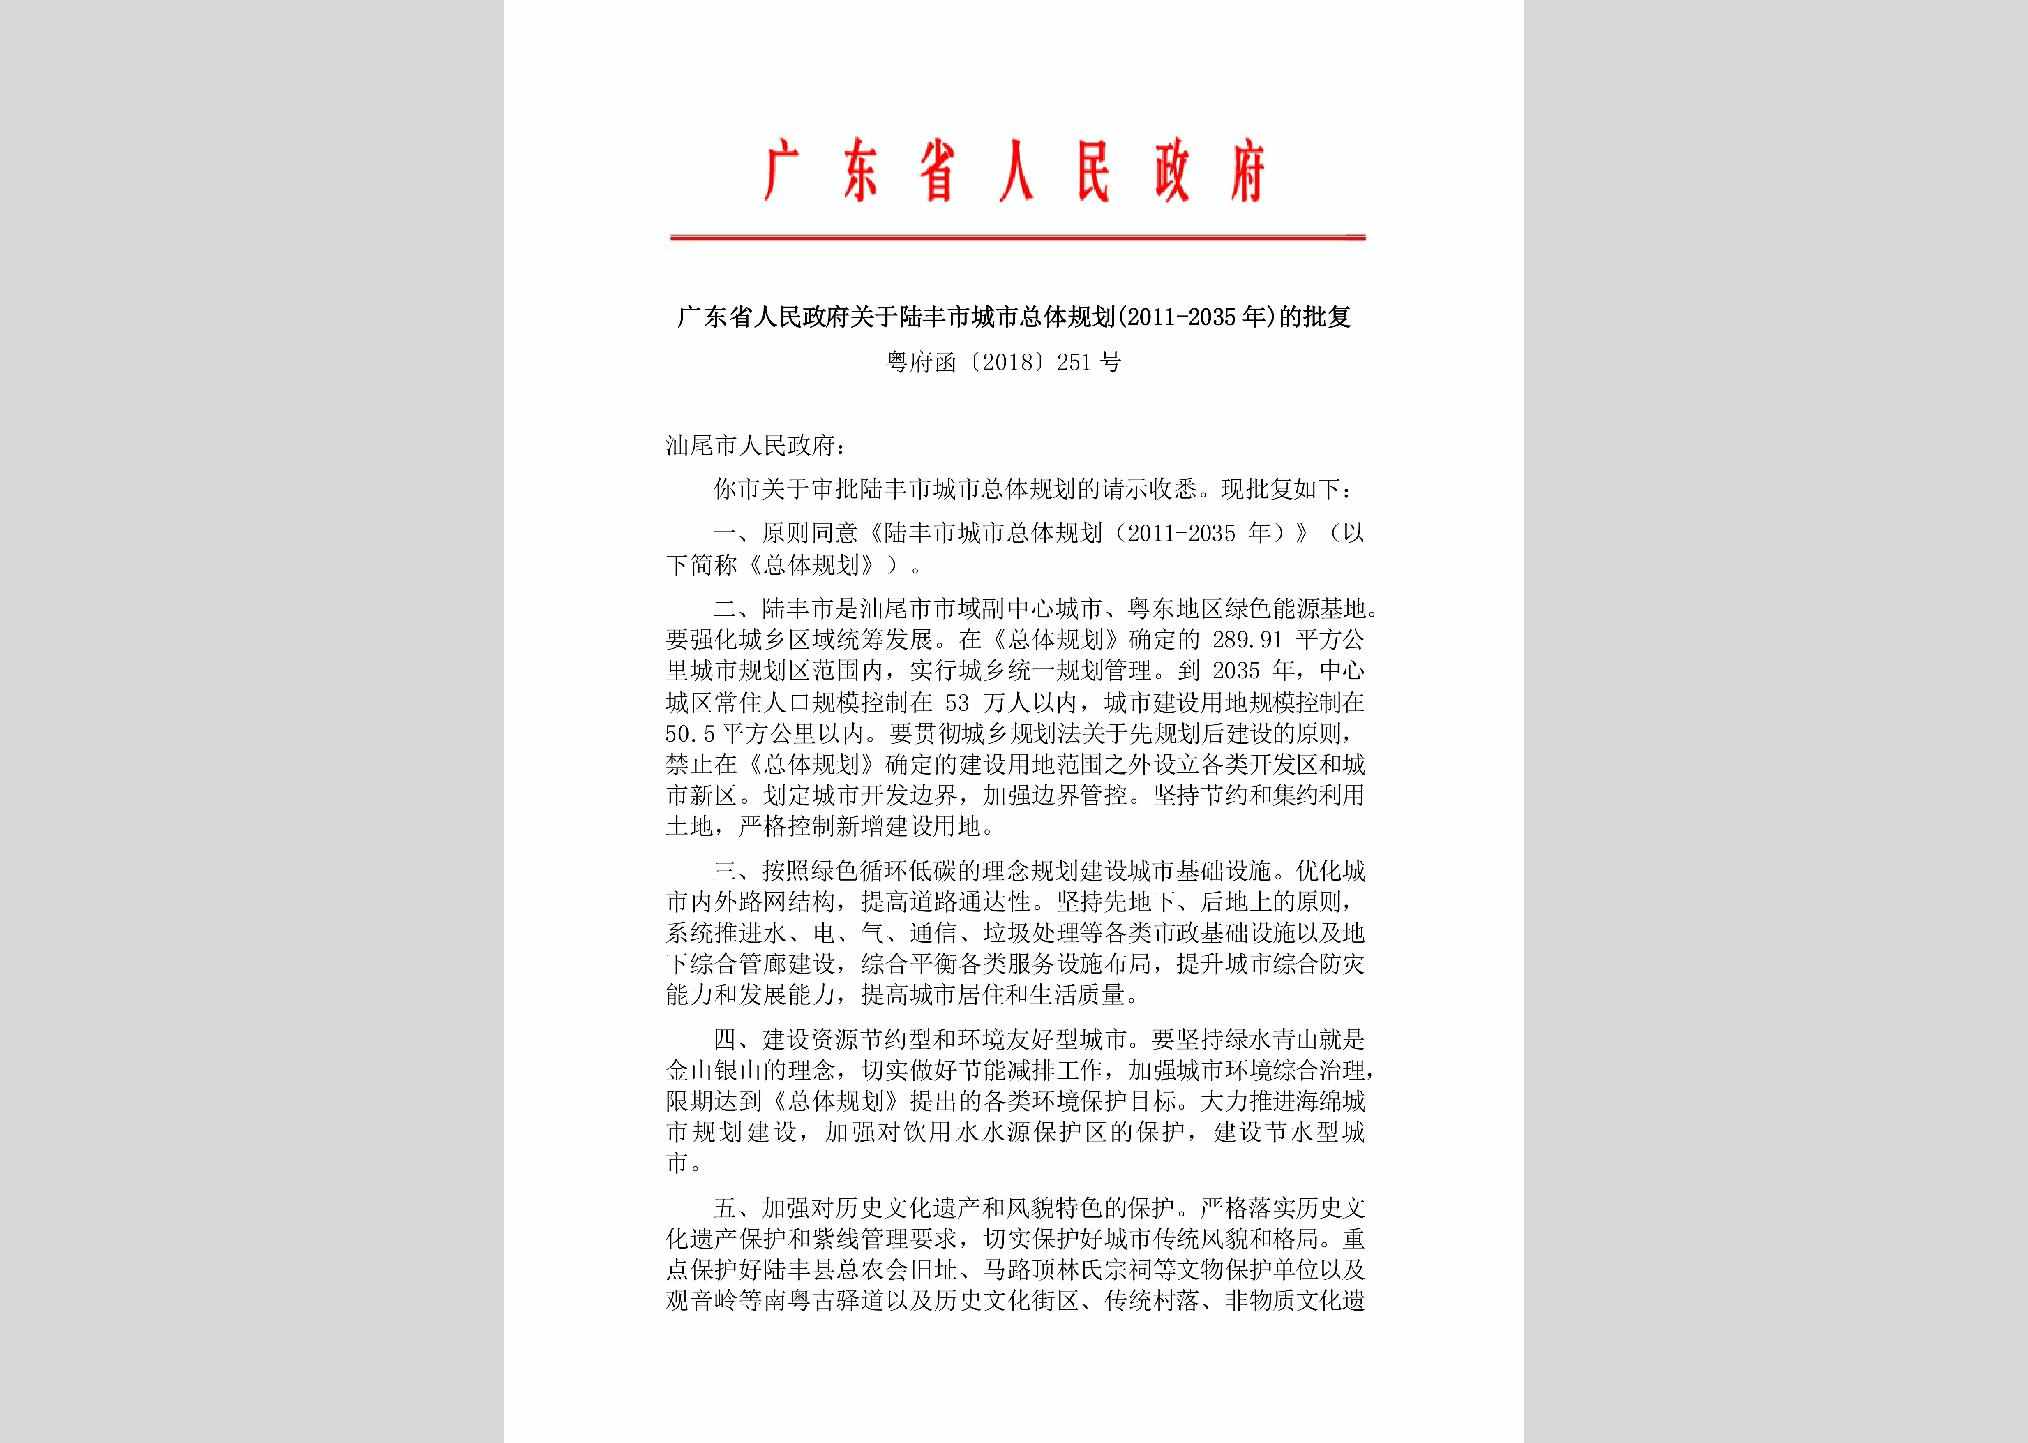 粤府函[2018]251号：广东省人民政府关于陆丰市城市总体规划(2011-2035年)的批复